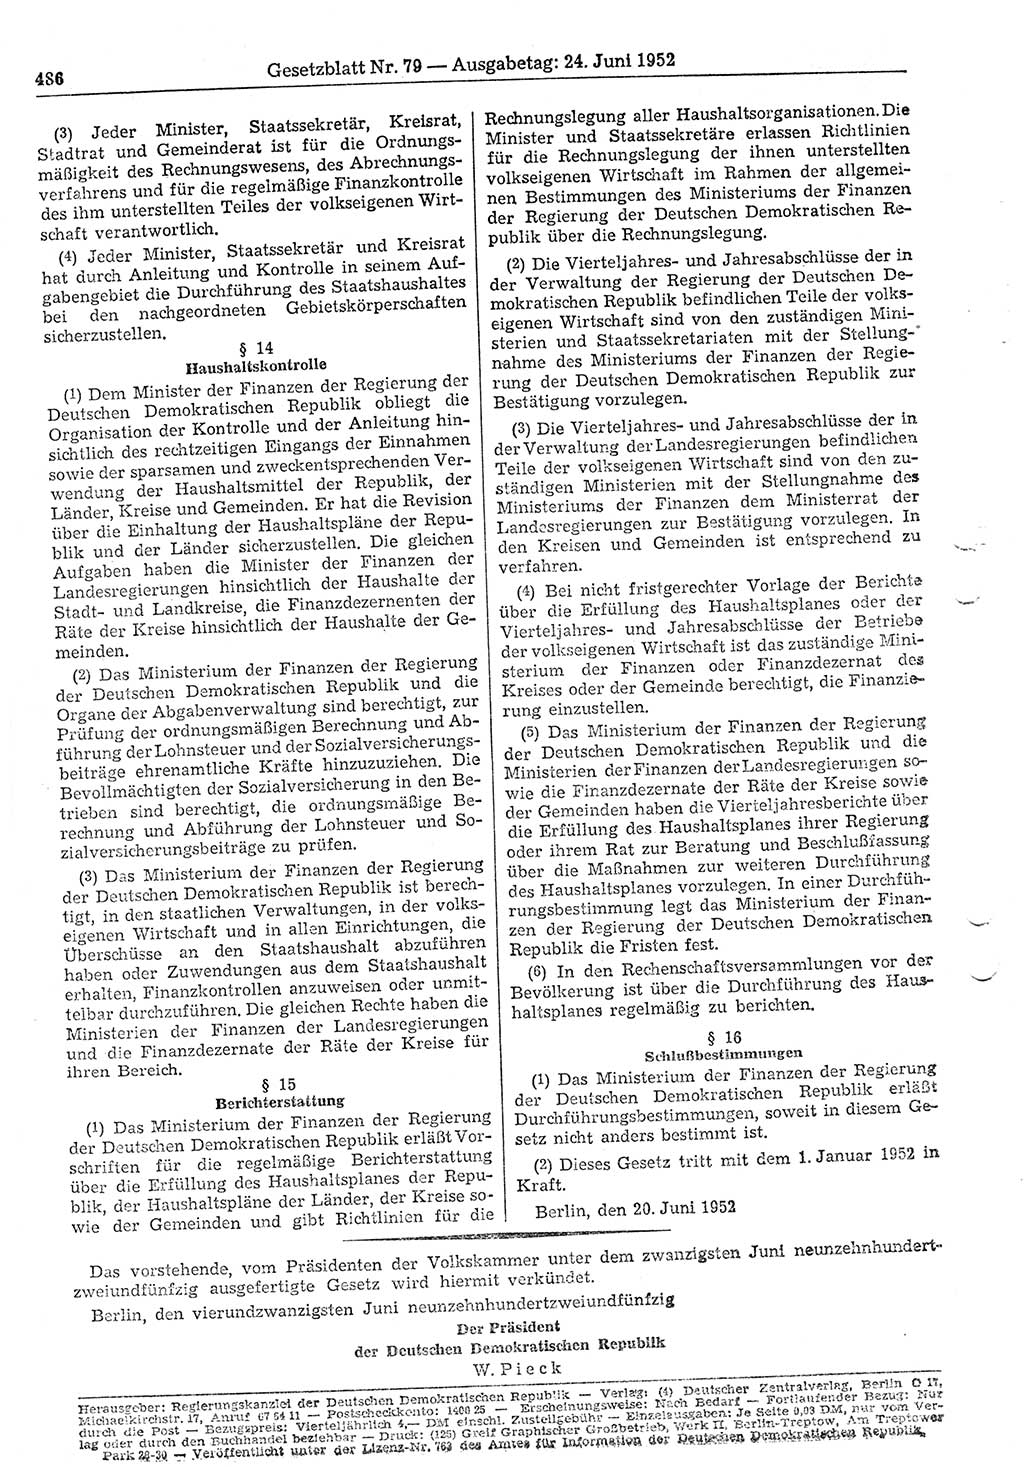 Gesetzblatt (GBl.) der Deutschen Demokratischen Republik (DDR) 1952, Seite 486 (GBl. DDR 1952, S. 486)